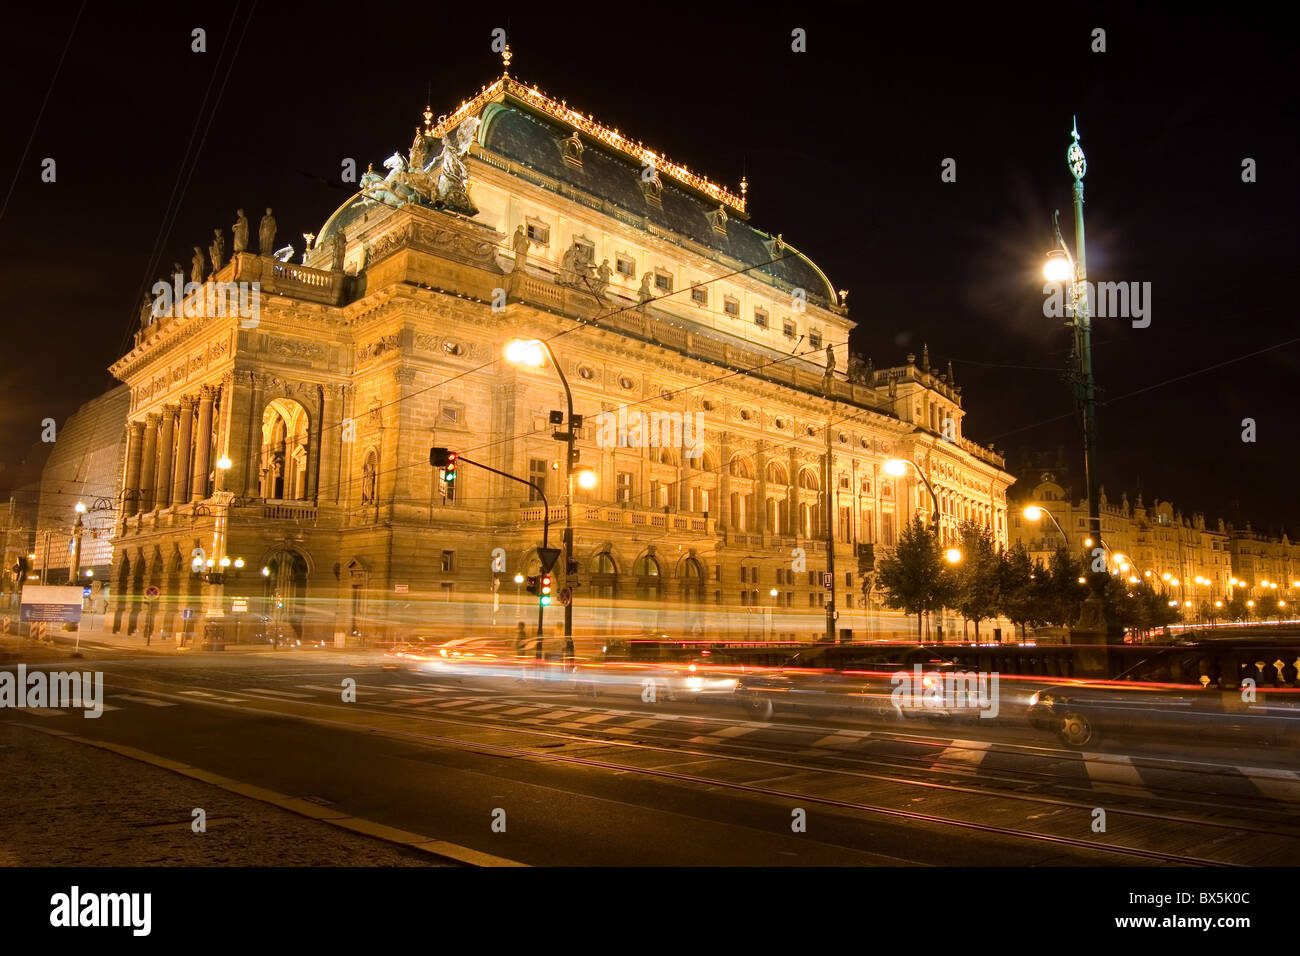 Czech National Theatre di notte - Praga Foto Stock